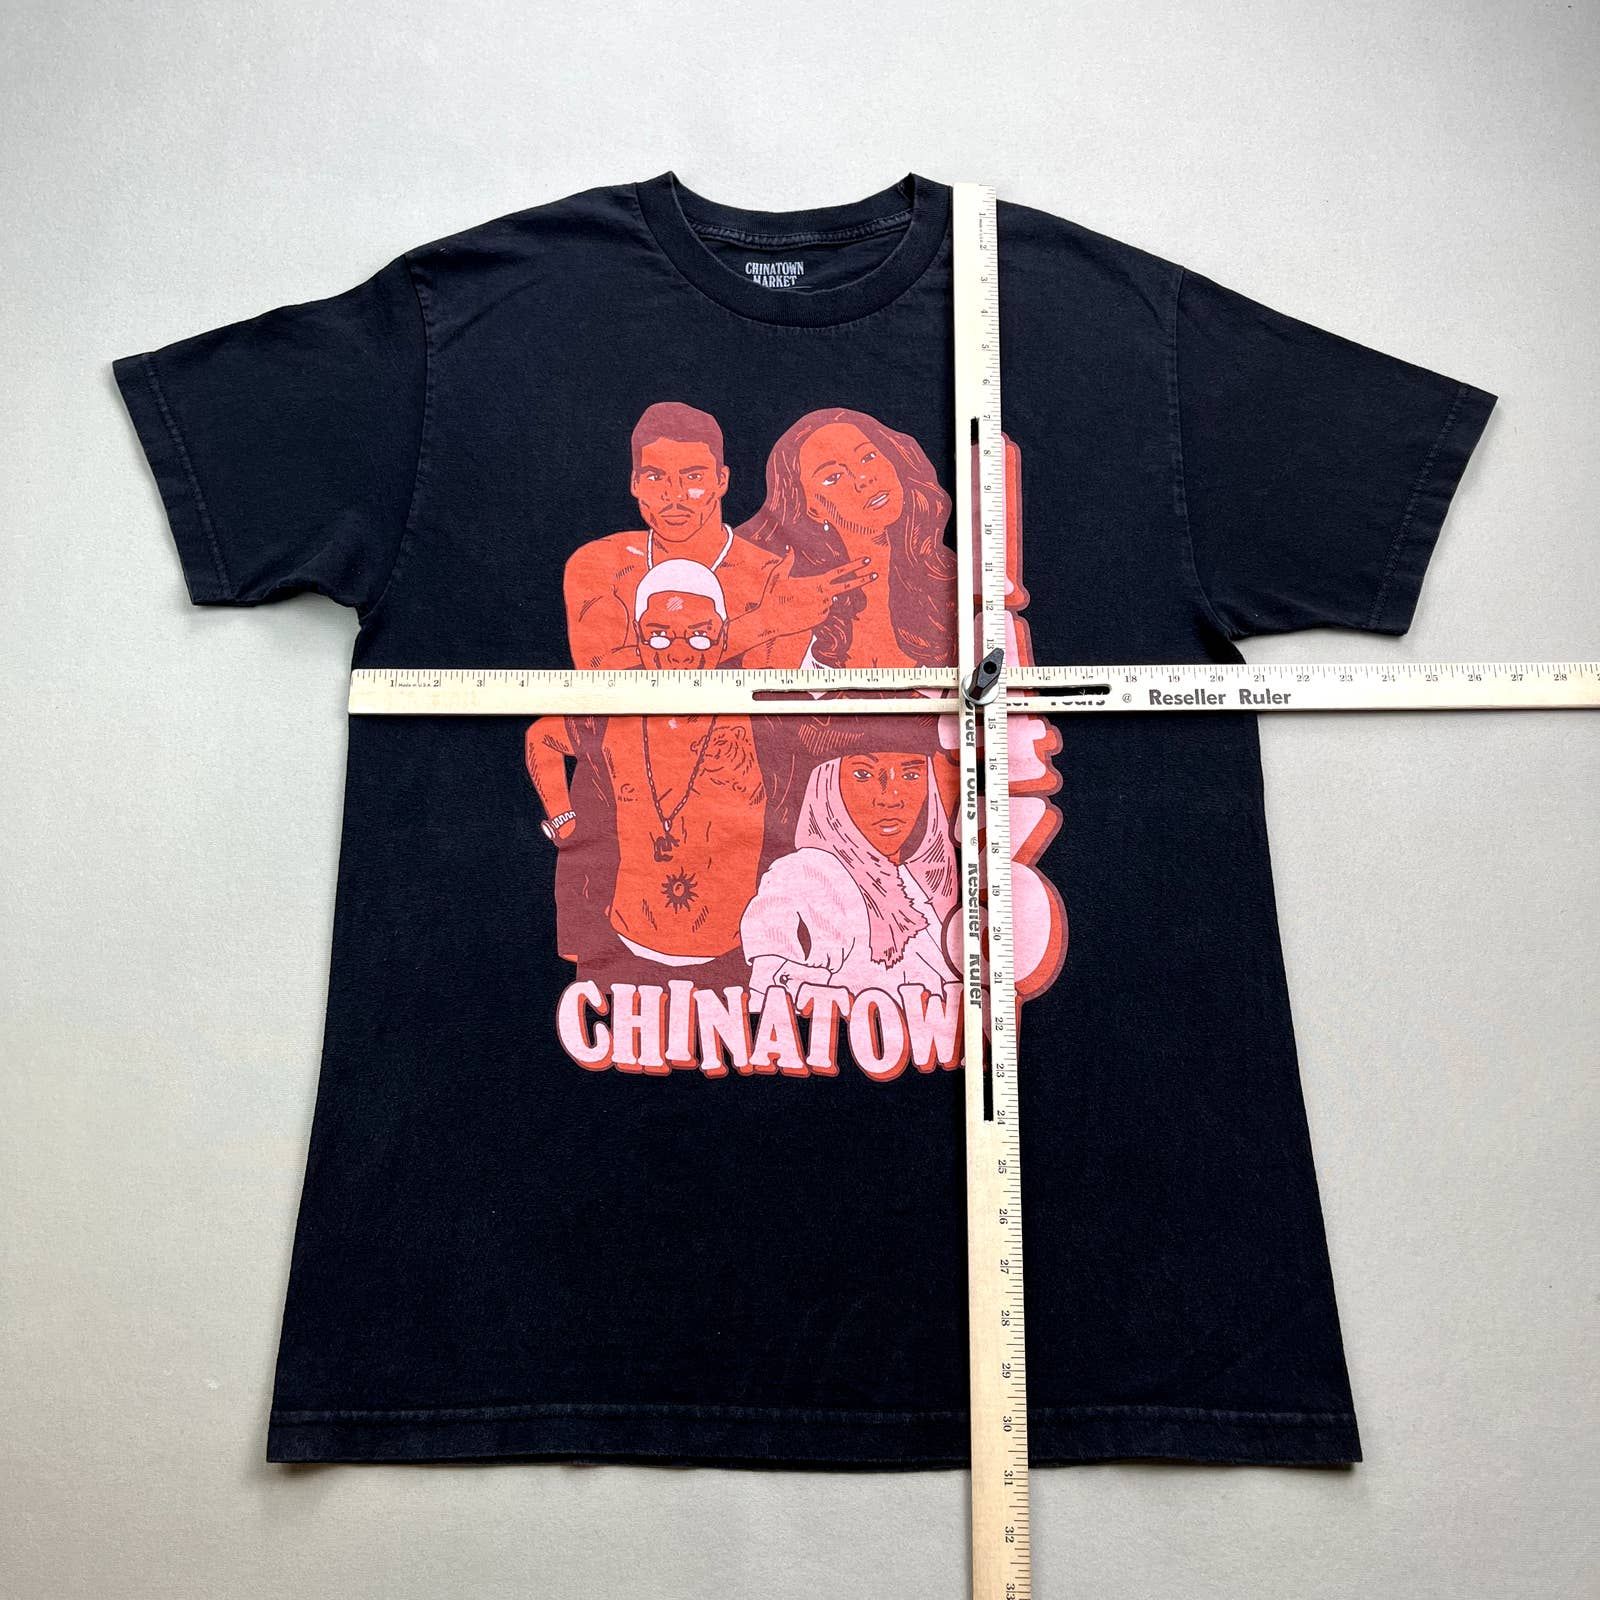 Market Chinatown Market T-Shirt Large Black 143 Artists Hip Hop Size US L / EU 52-54 / 3 - 4 Thumbnail